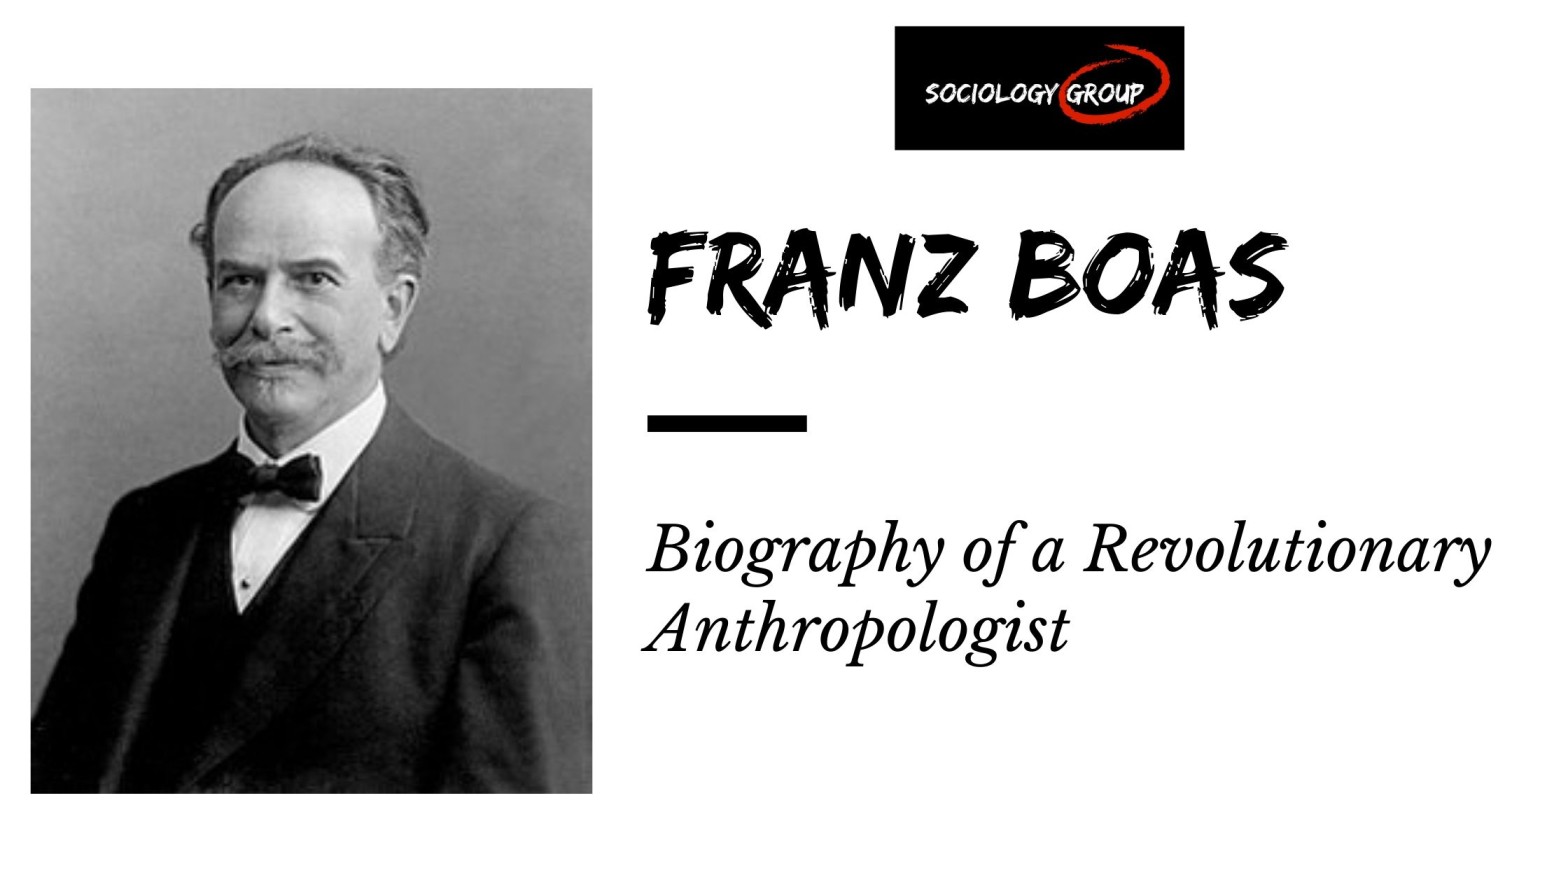 Franz Boas: Biography of a Revolutionary Anthropologist